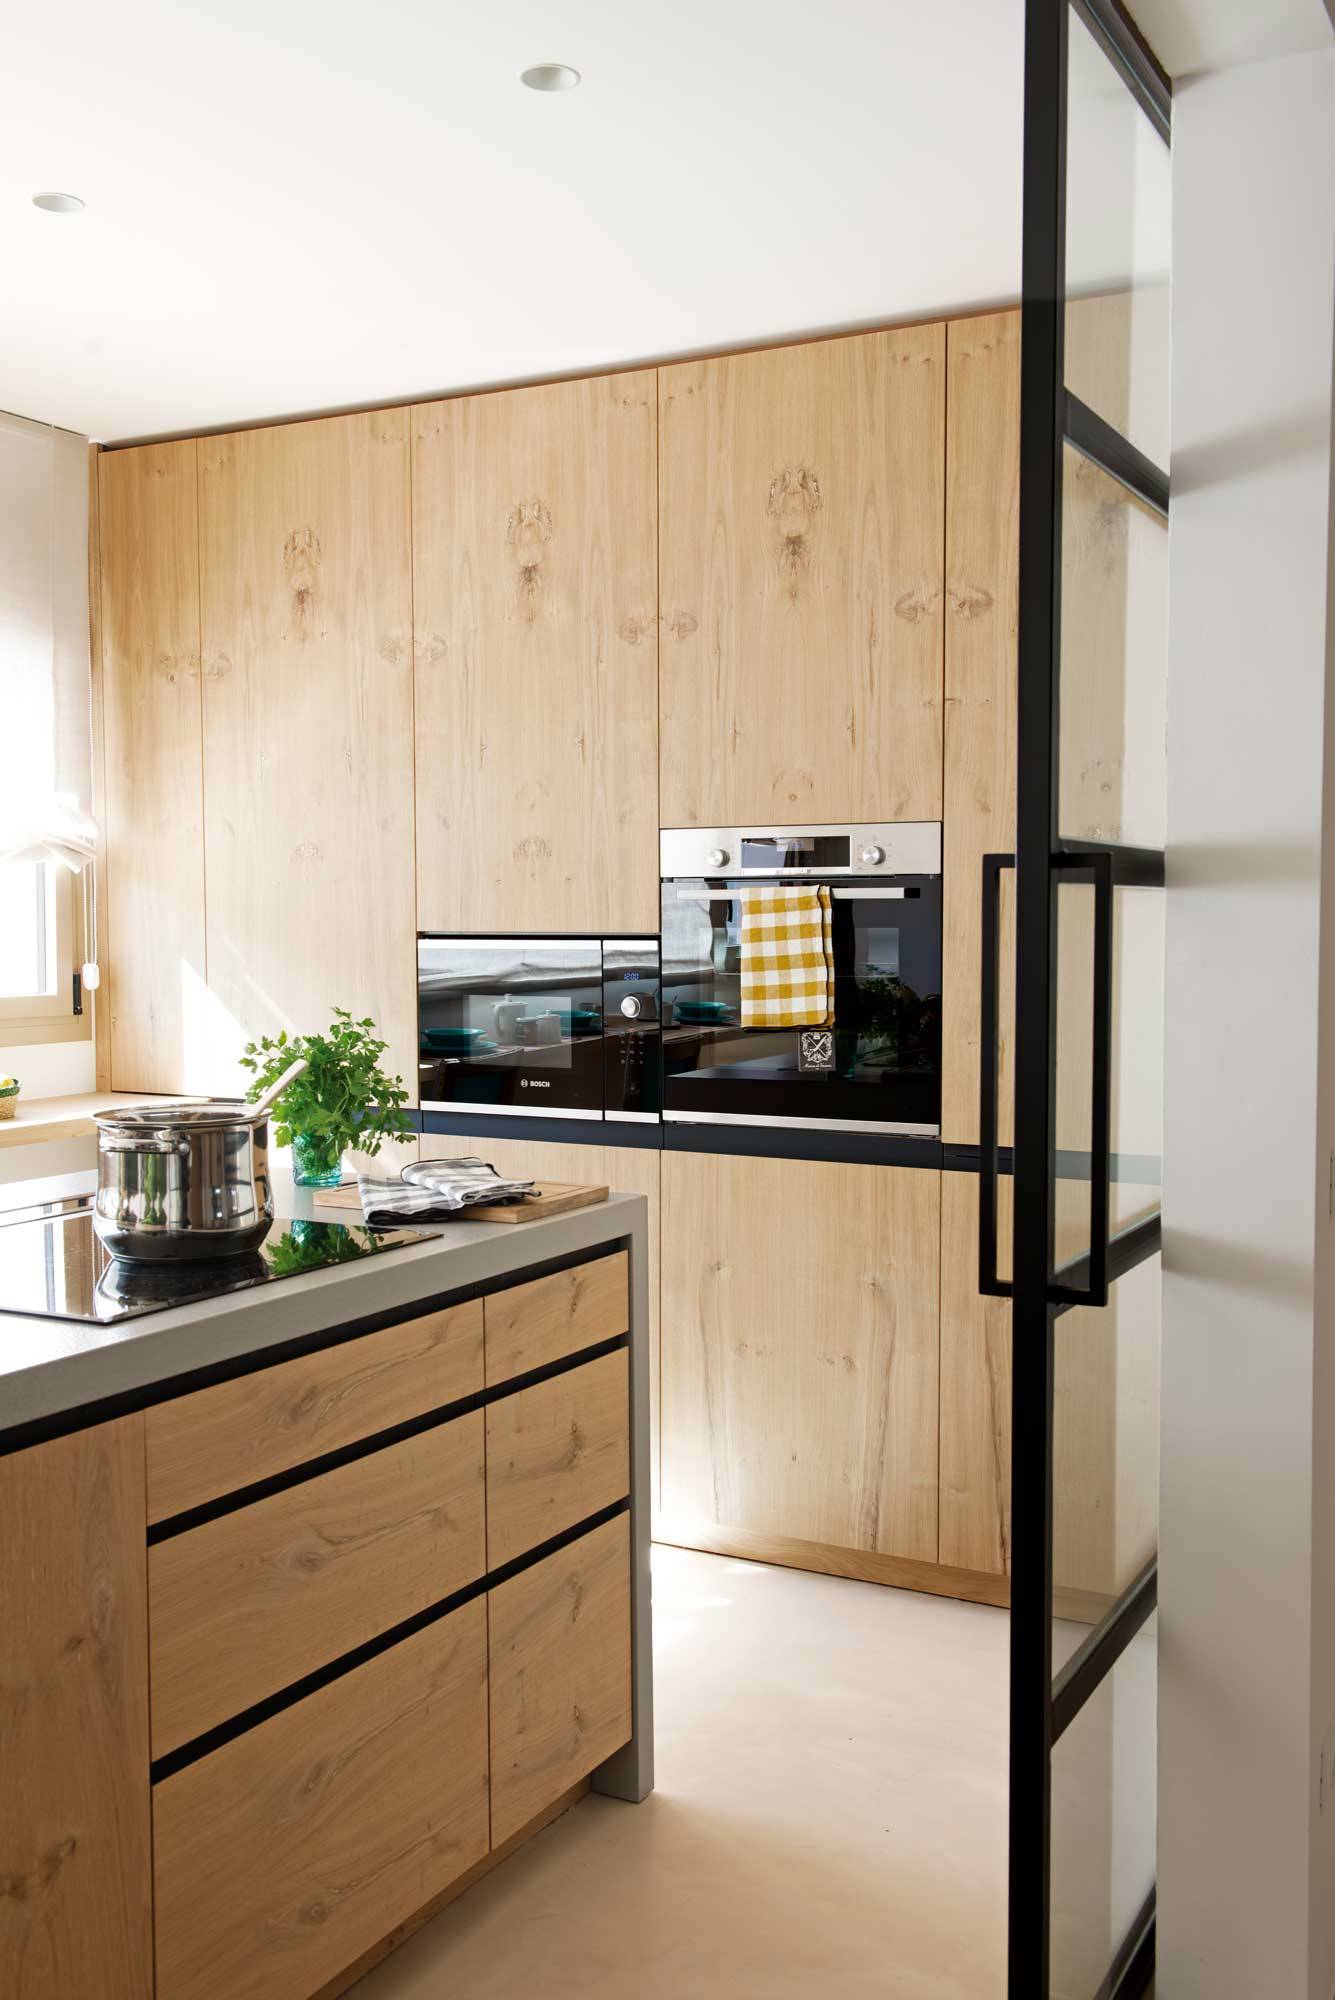 Cocina moderna con muebles panelados con acabado de madera y electrodomésticos eficientes. 